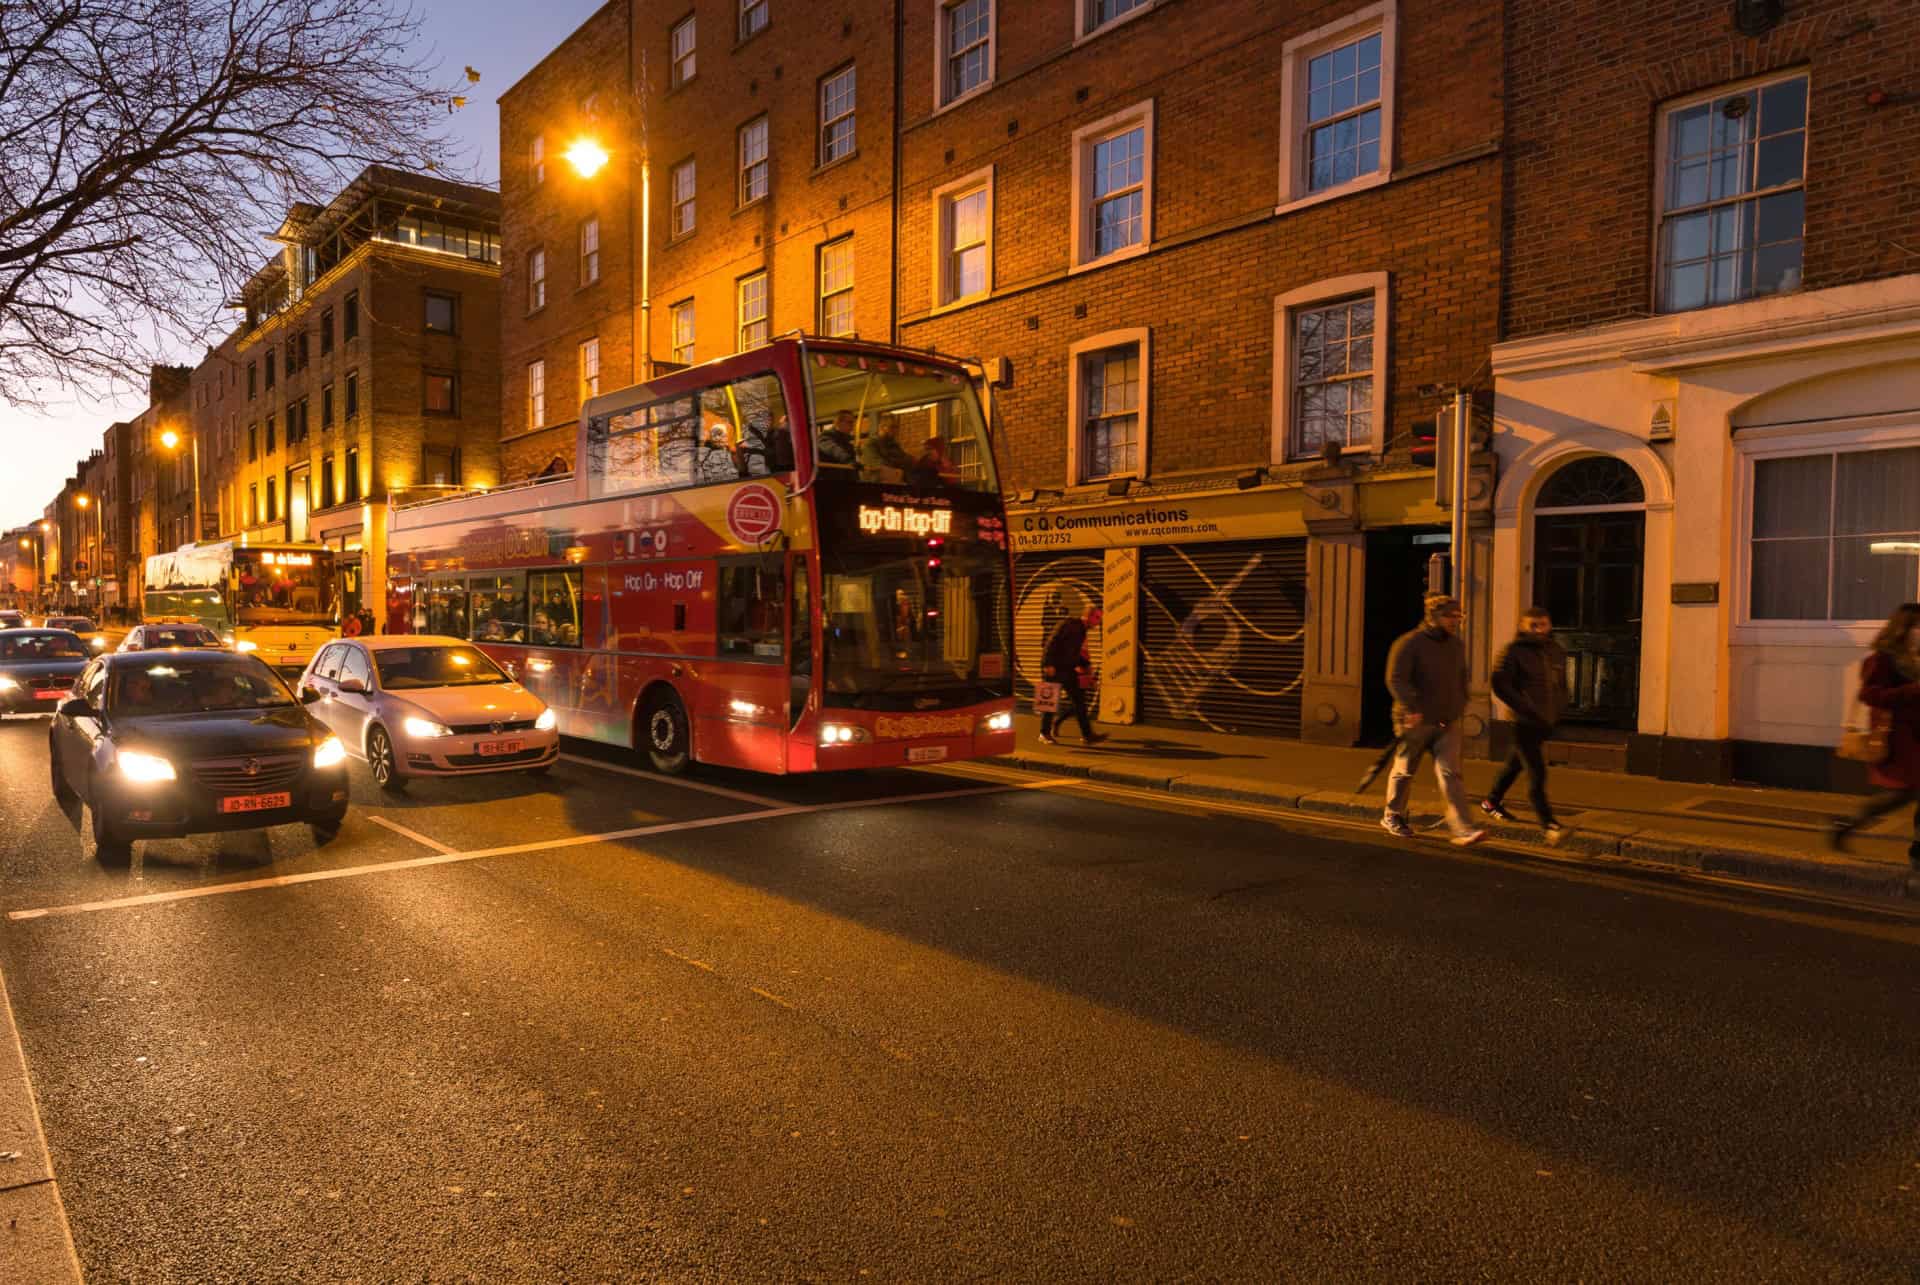 visite nuit bus touristique irlande